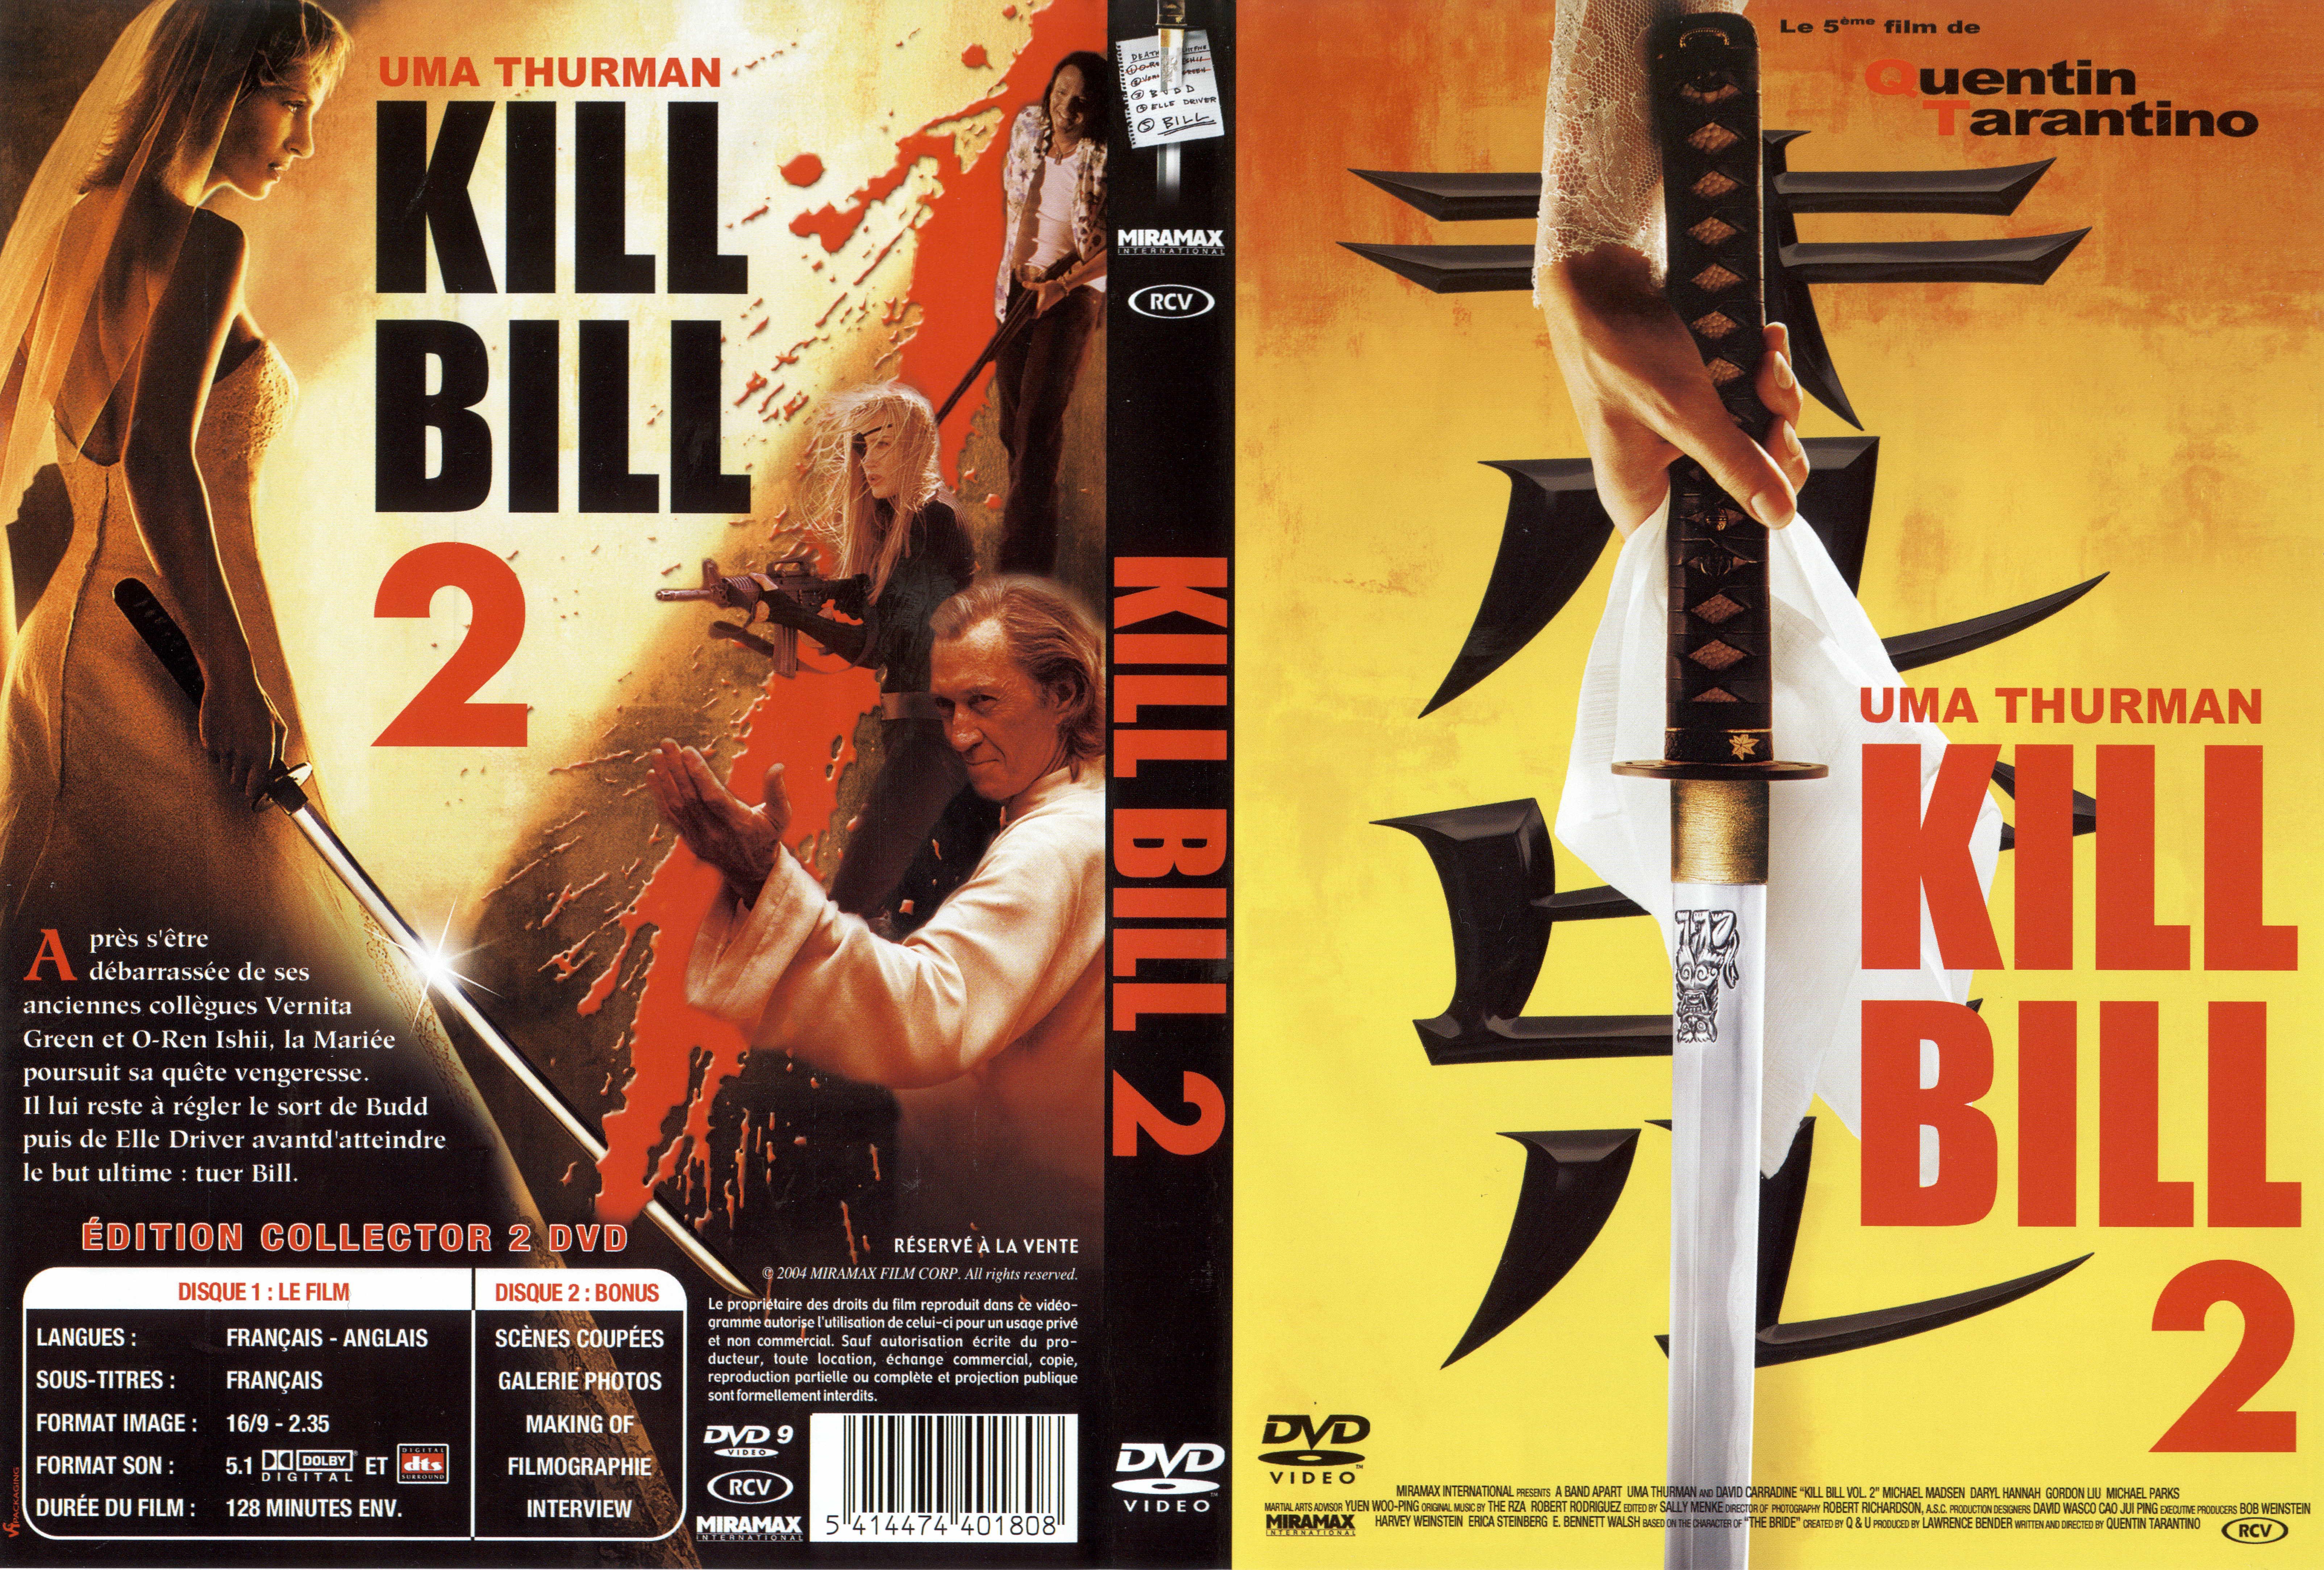 Jaquette DVD Kill bill vol 2 v4